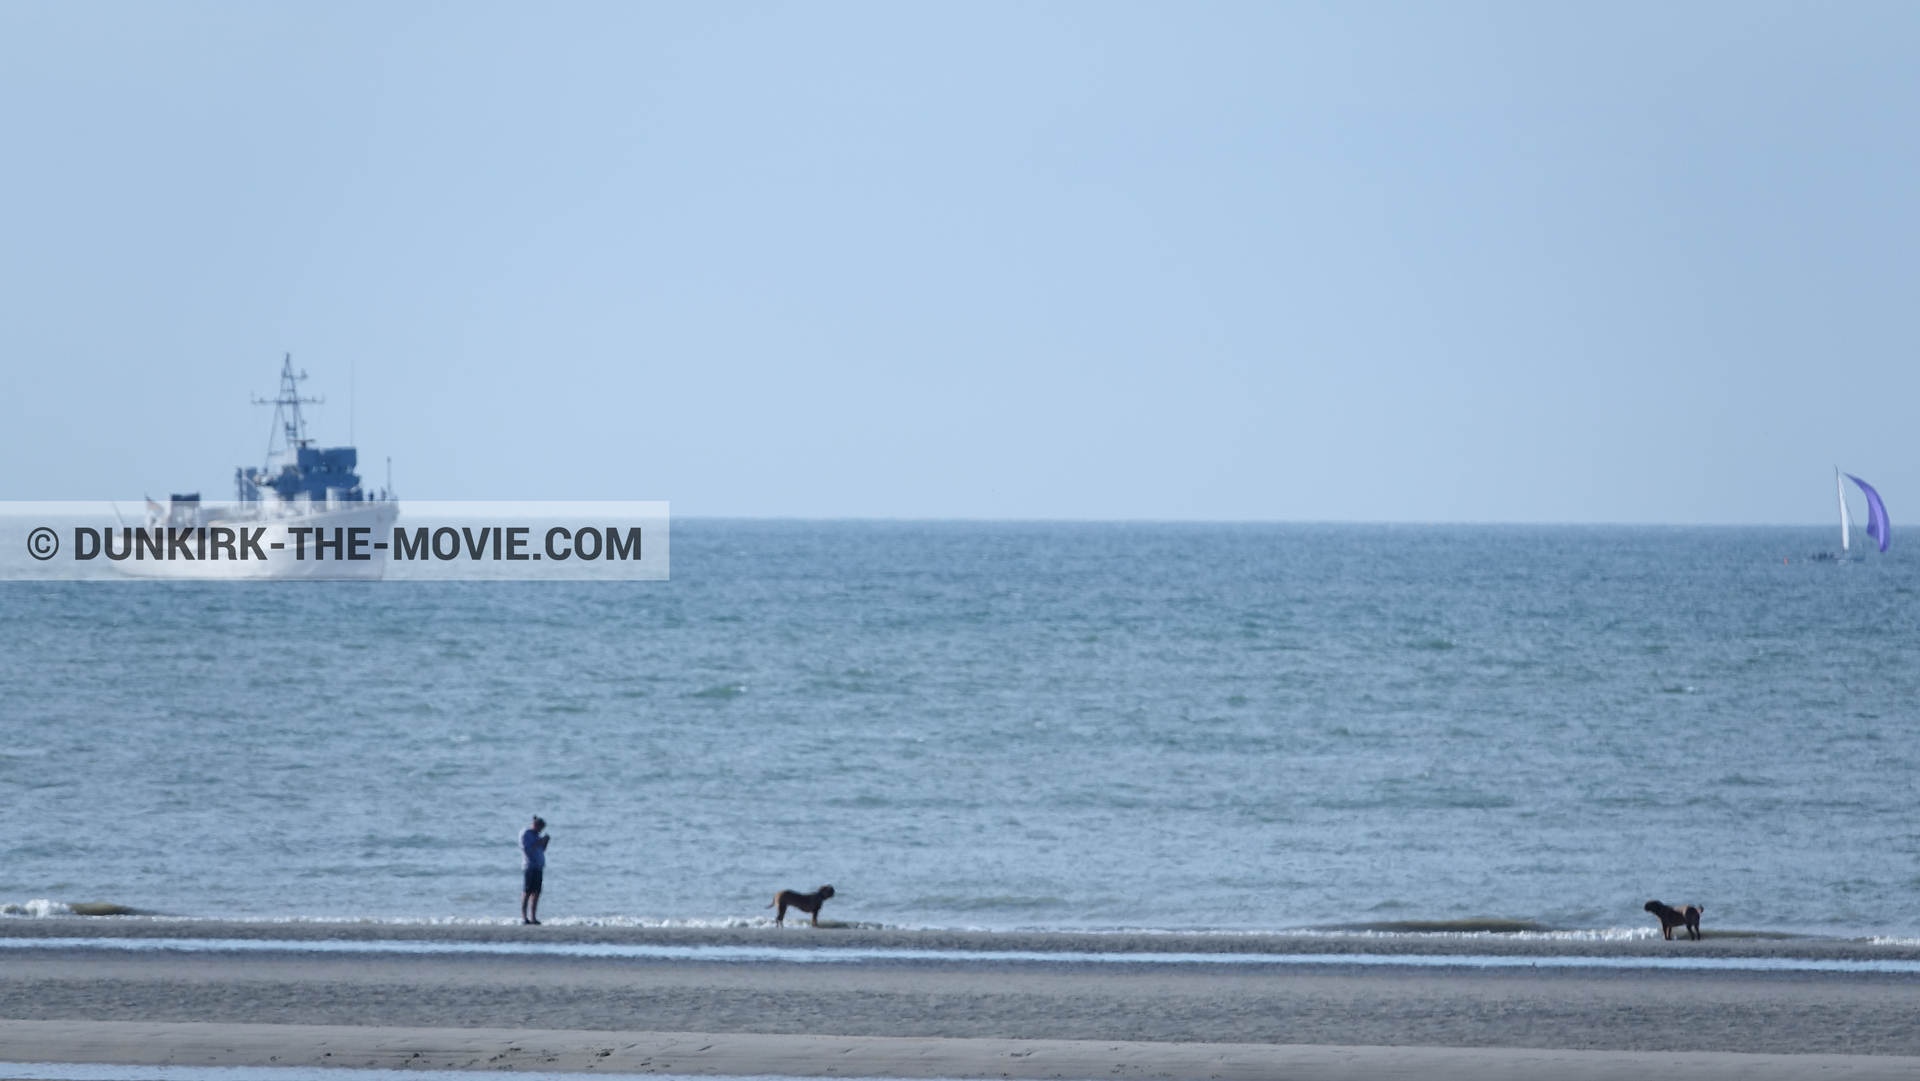 Fotos con cielo azul, F34 - Hr.Ms. Sittard, mares calma, playa,  durante el rodaje de la película Dunkerque de Nolan